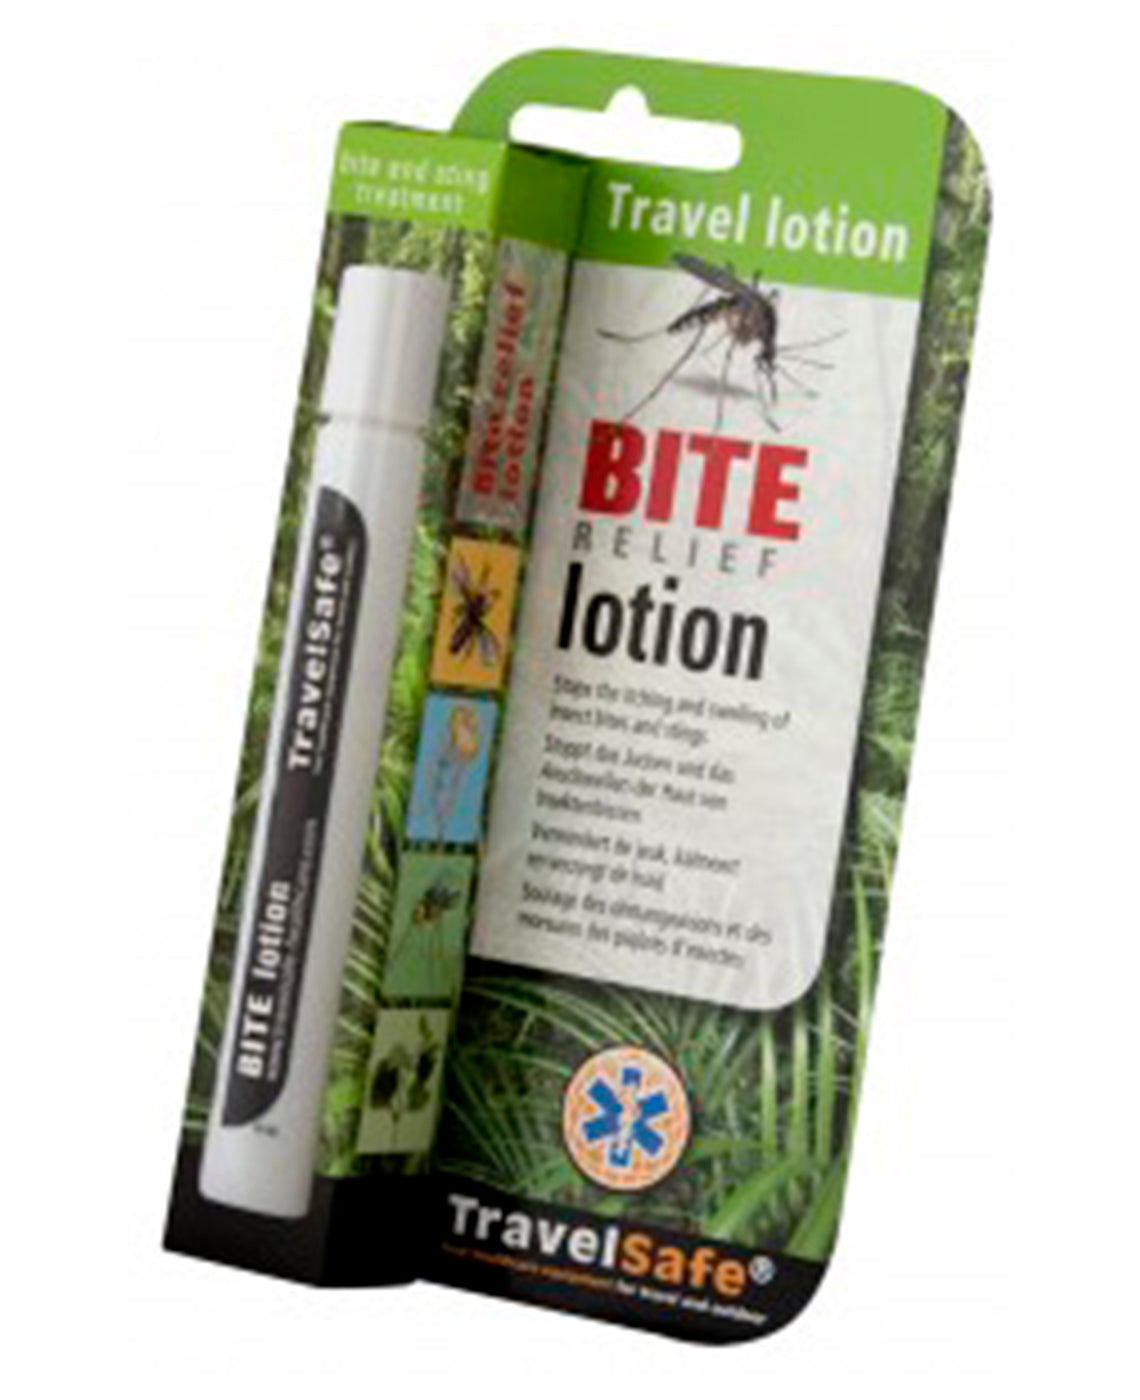 Se Travelsafe Bite Relief Lotion - Insektmidler hos RejseGear.dk